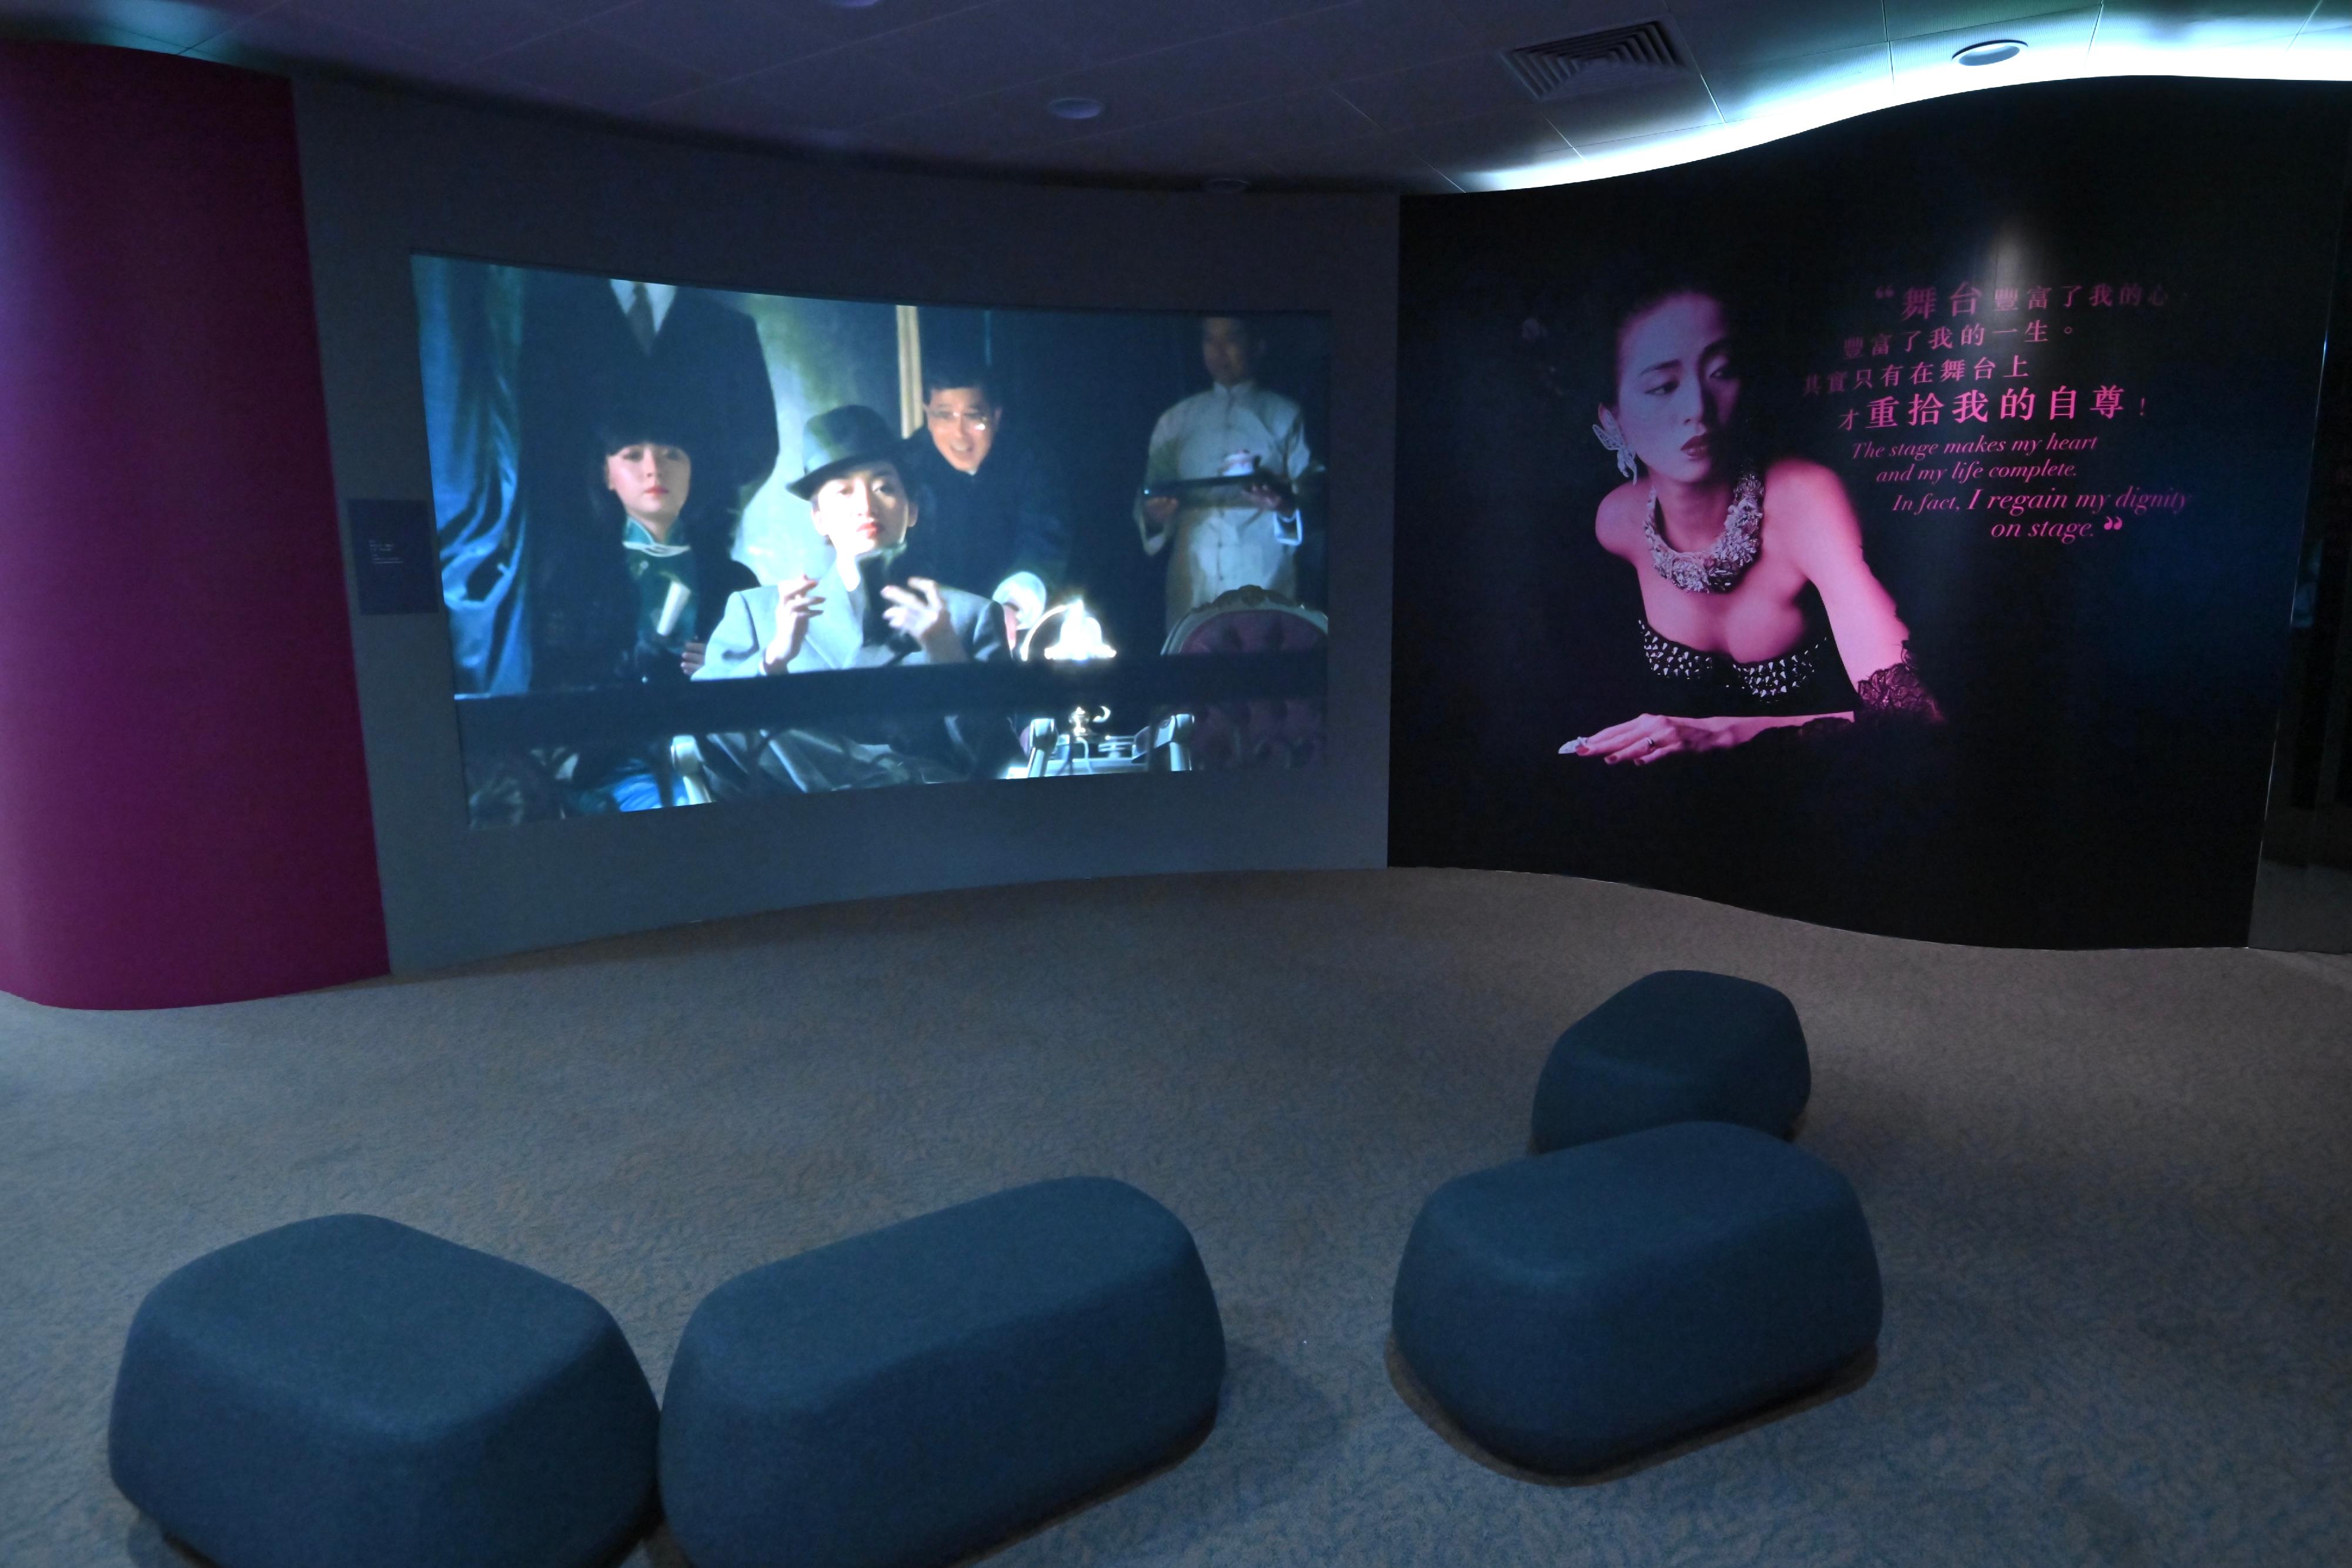 「绝代芳华・梅艳芳」展览开幕典礼今日（十二月二十三日）在香港文化博物馆举行。展览影片展示梅艳芳在音乐和电影中不同形象及获奖感受。